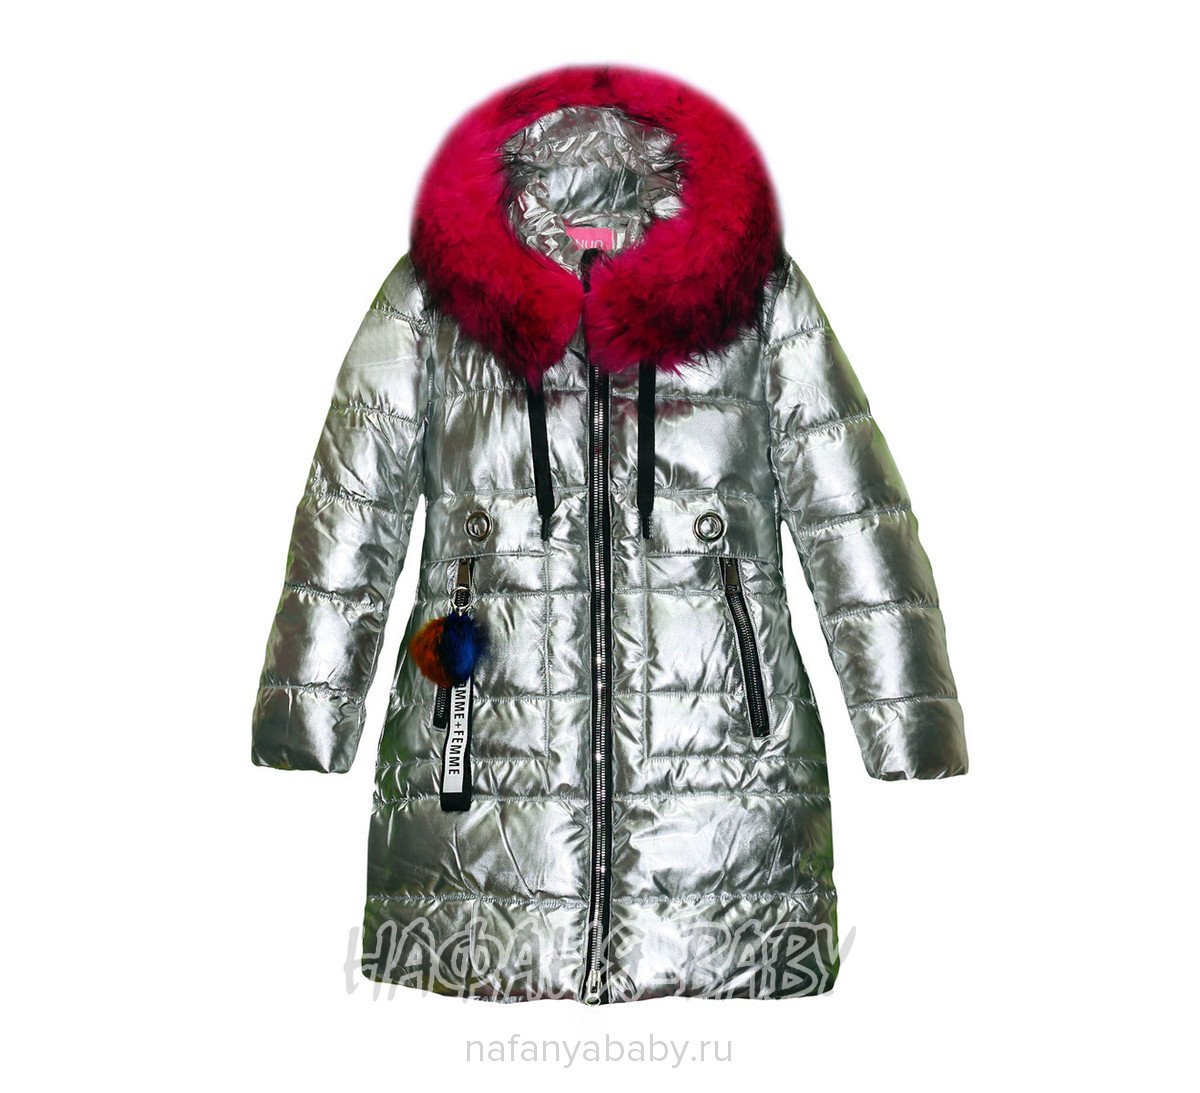 Зимнее  подростковое пальто YINUO, купить в интернет магазине Нафаня. арт: 8811.